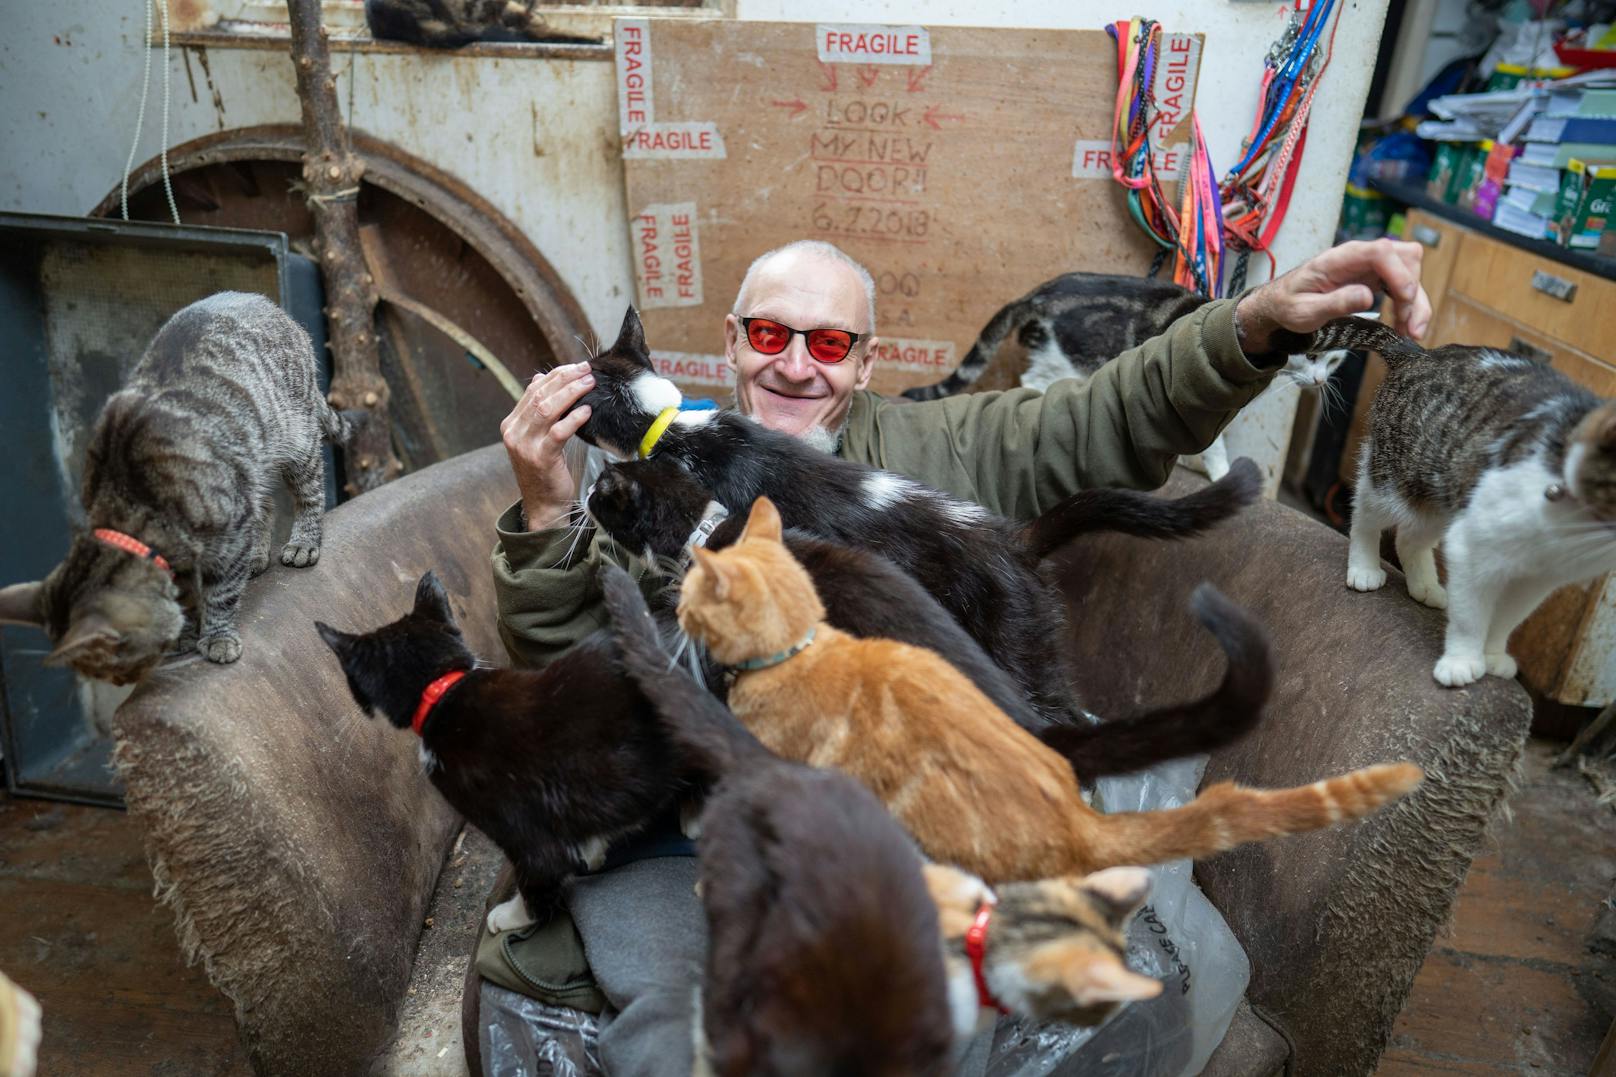 Ian "Catmondo" lebt mit mehr als 70 Katzen in mehr als bescheidenen Verhältnissen. 